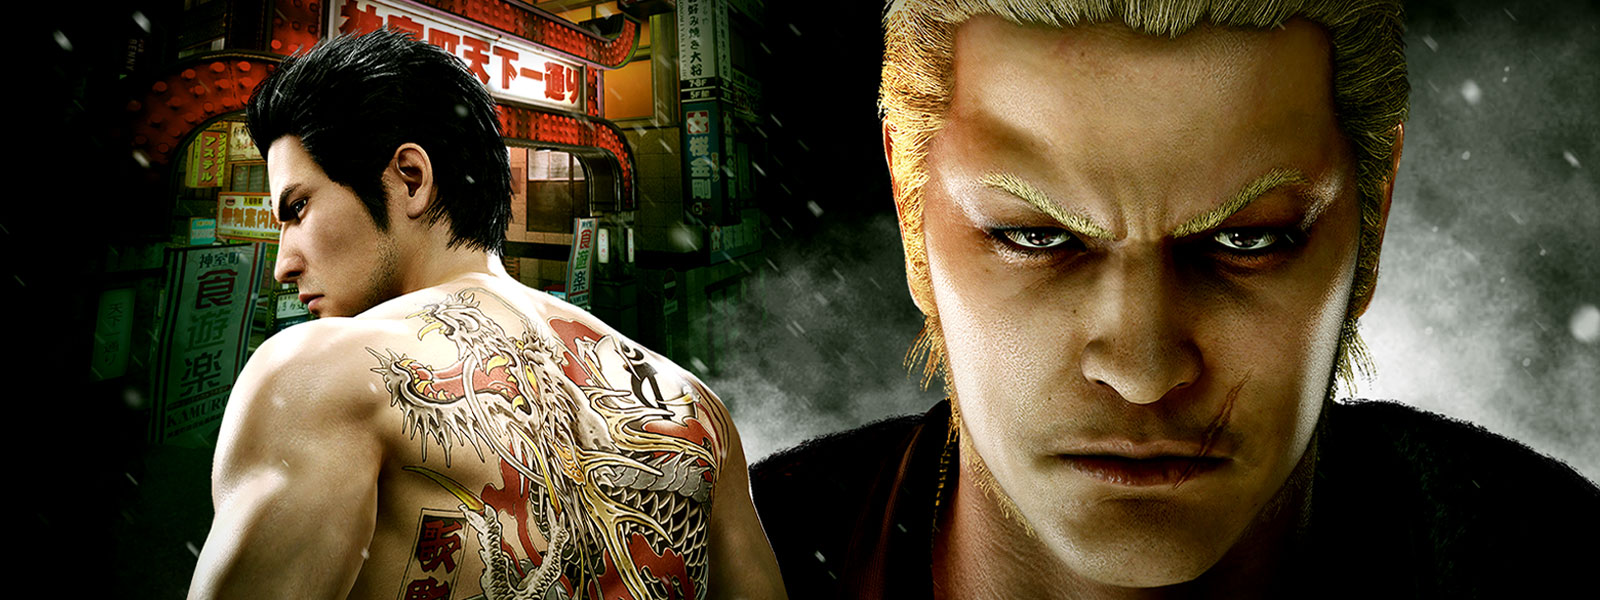 Deux personnages Yakuza en vedette dans un cadre urbain mal fréquenté de nuit.